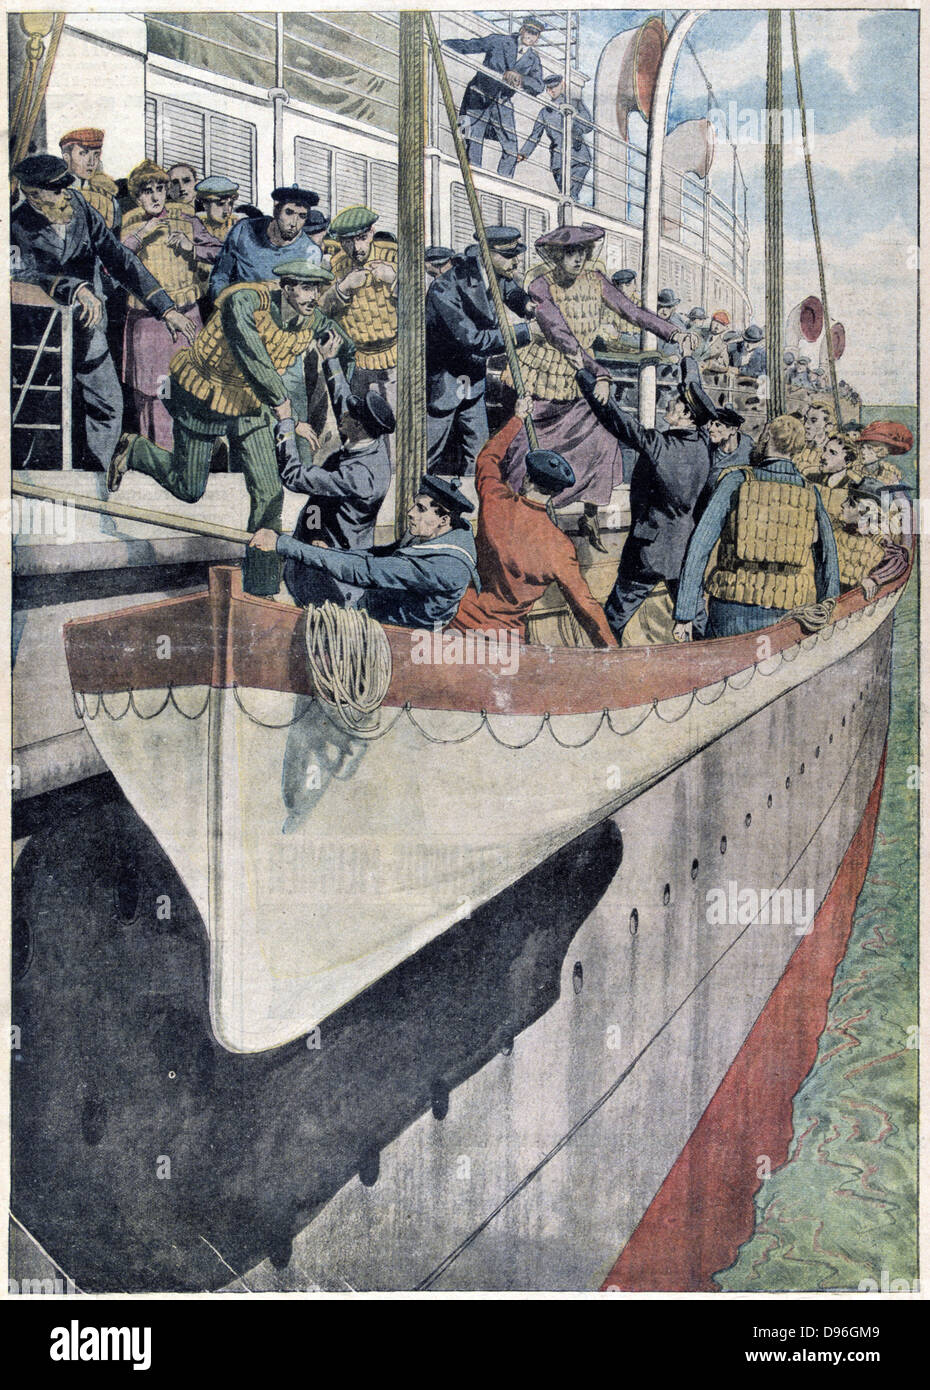 La leçon de SS Titanic : Canot de percer sur un paquebot de ligne, 1912. Exploité par la White Star Line, le 14 avril 1912 SS Banque D'Images